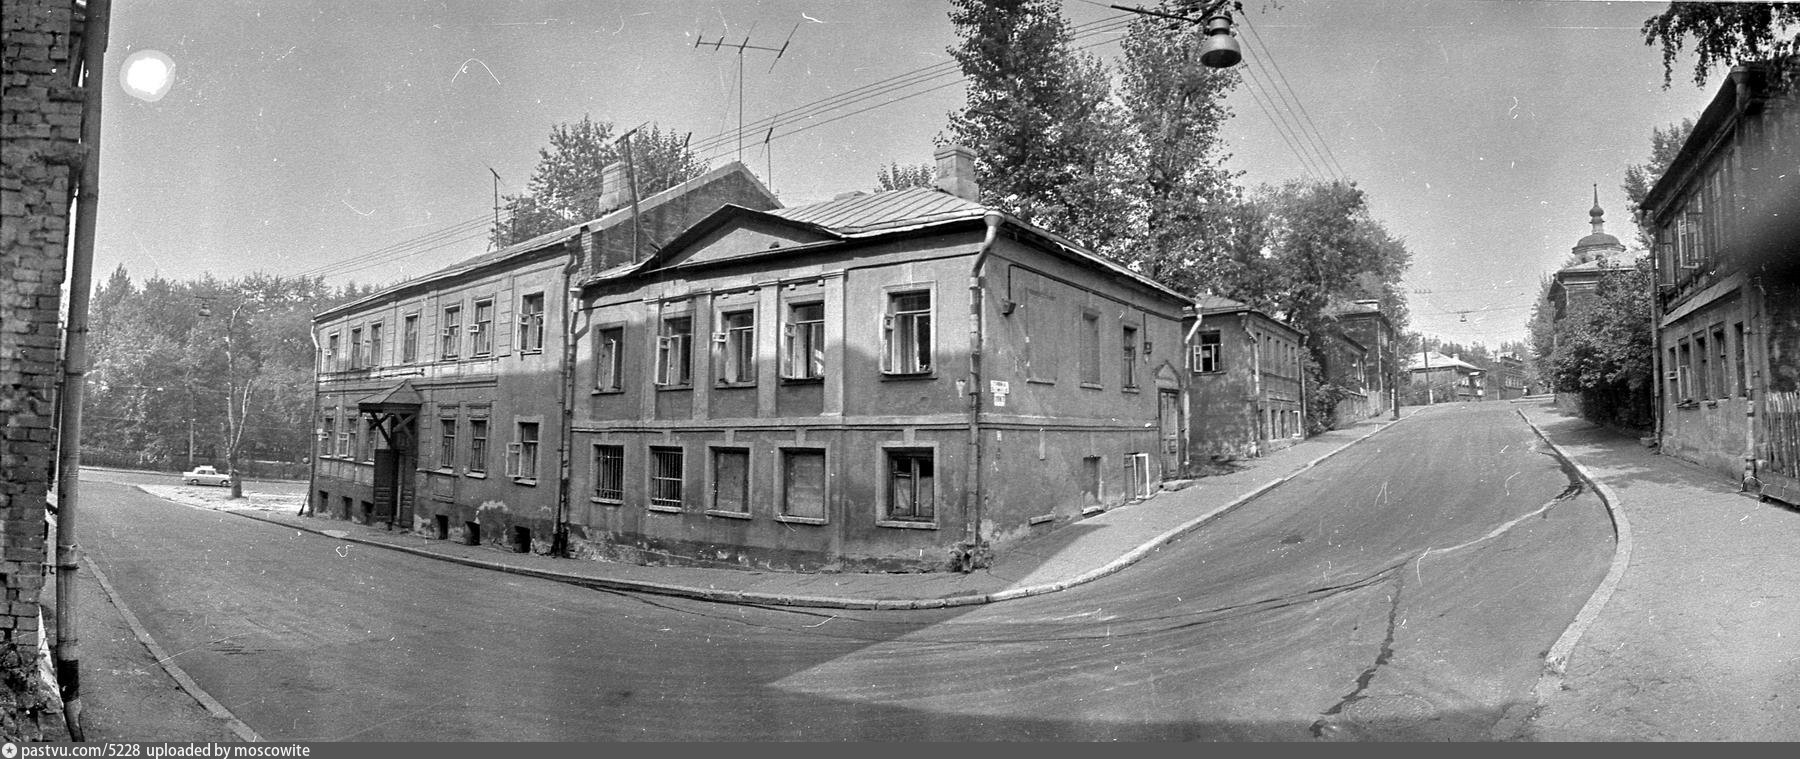 Входим в стари 1 ый дом. 1 Й Троицкий переулок. Троицкий переулок Москва. 1 Й Троицкий переулок в 1960 году. Троицкий переулок Москва в 1967.